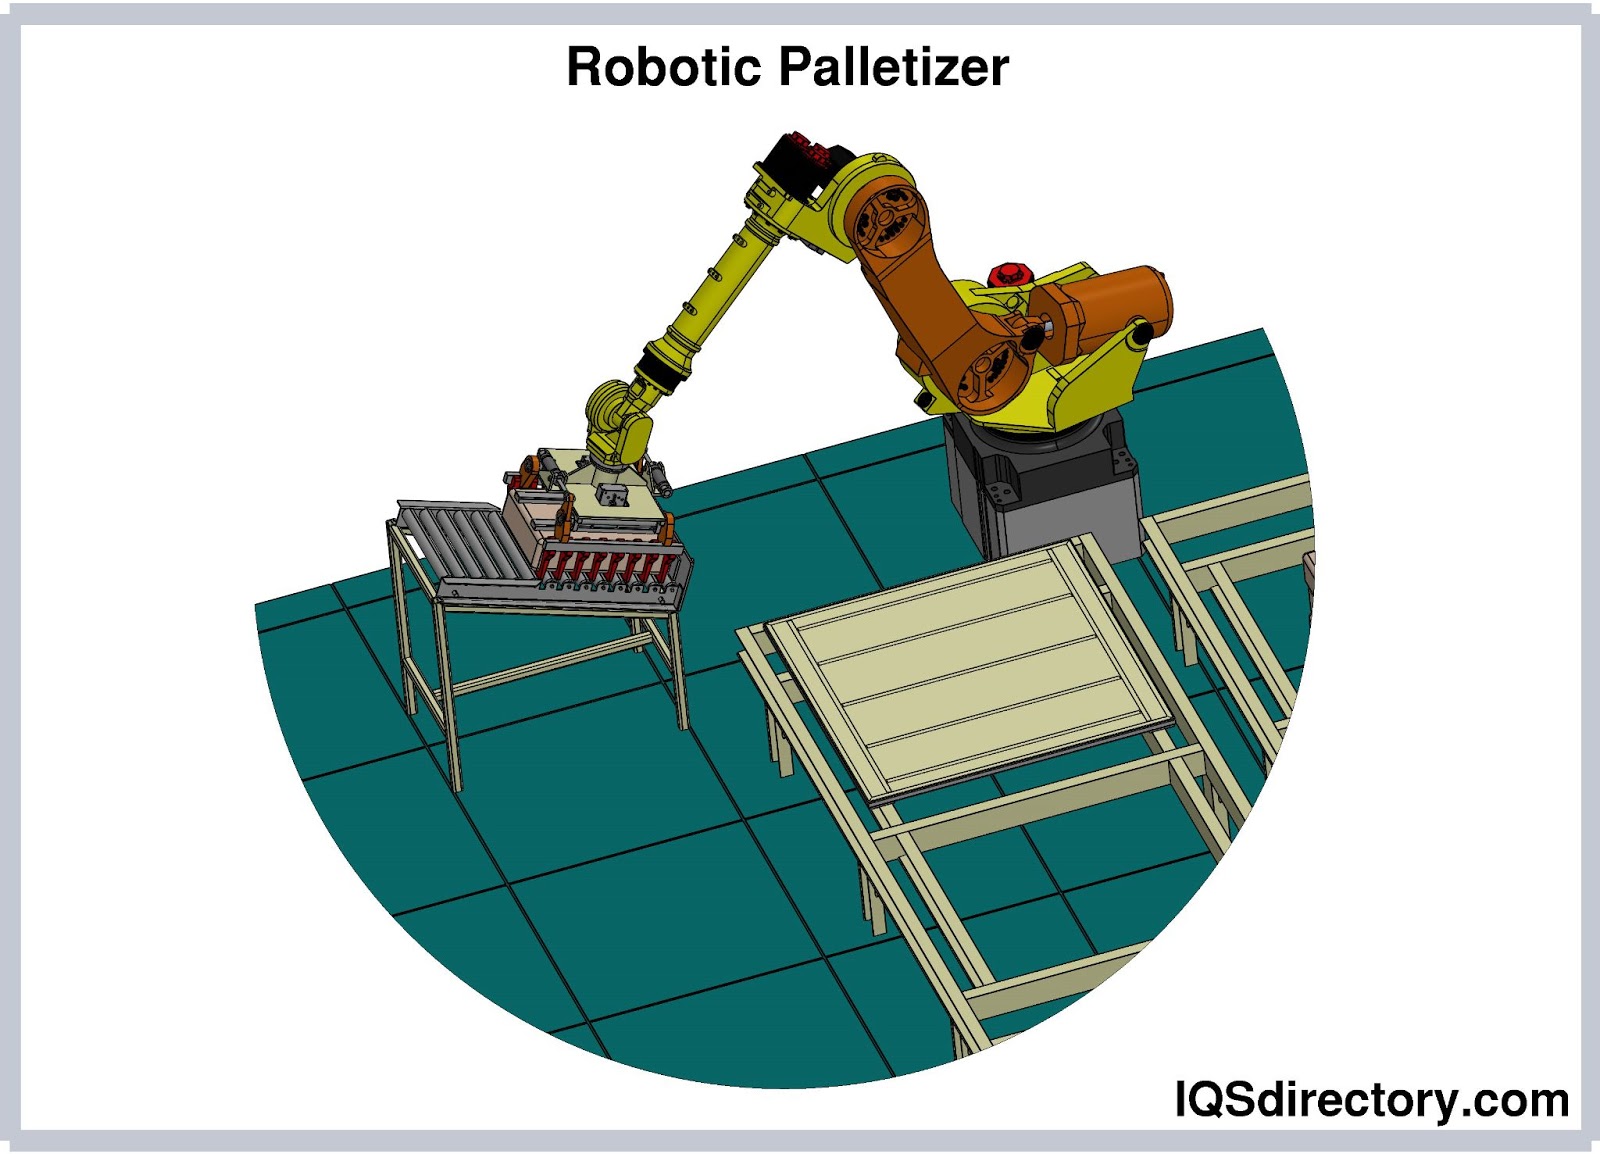 Robotic Palletizers